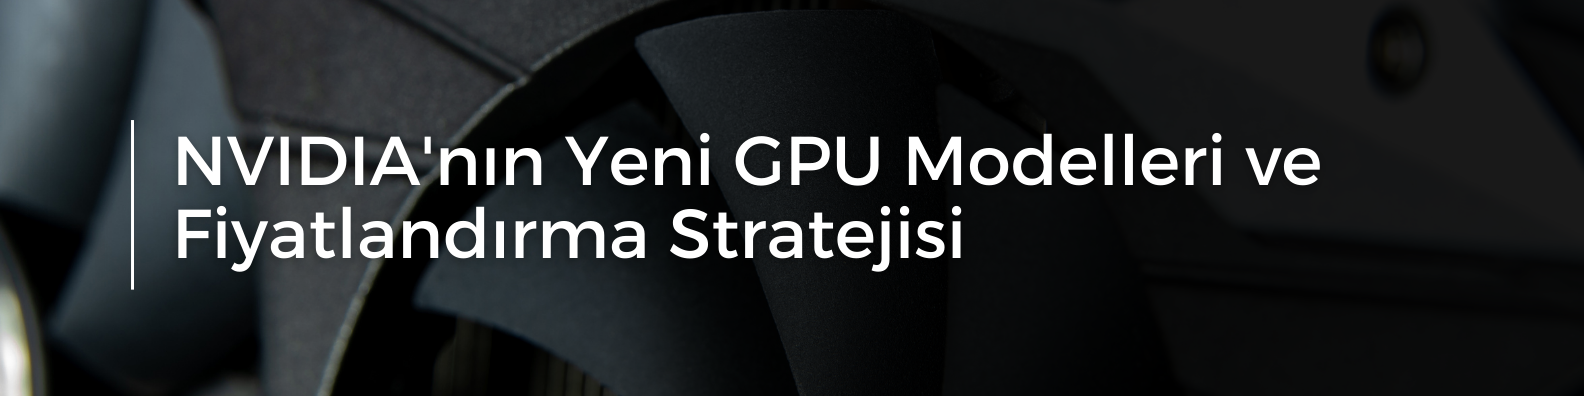 NVIDIA'nın Yeni GPU Modelleri ve Fiyatlandırma Stratejisi.png